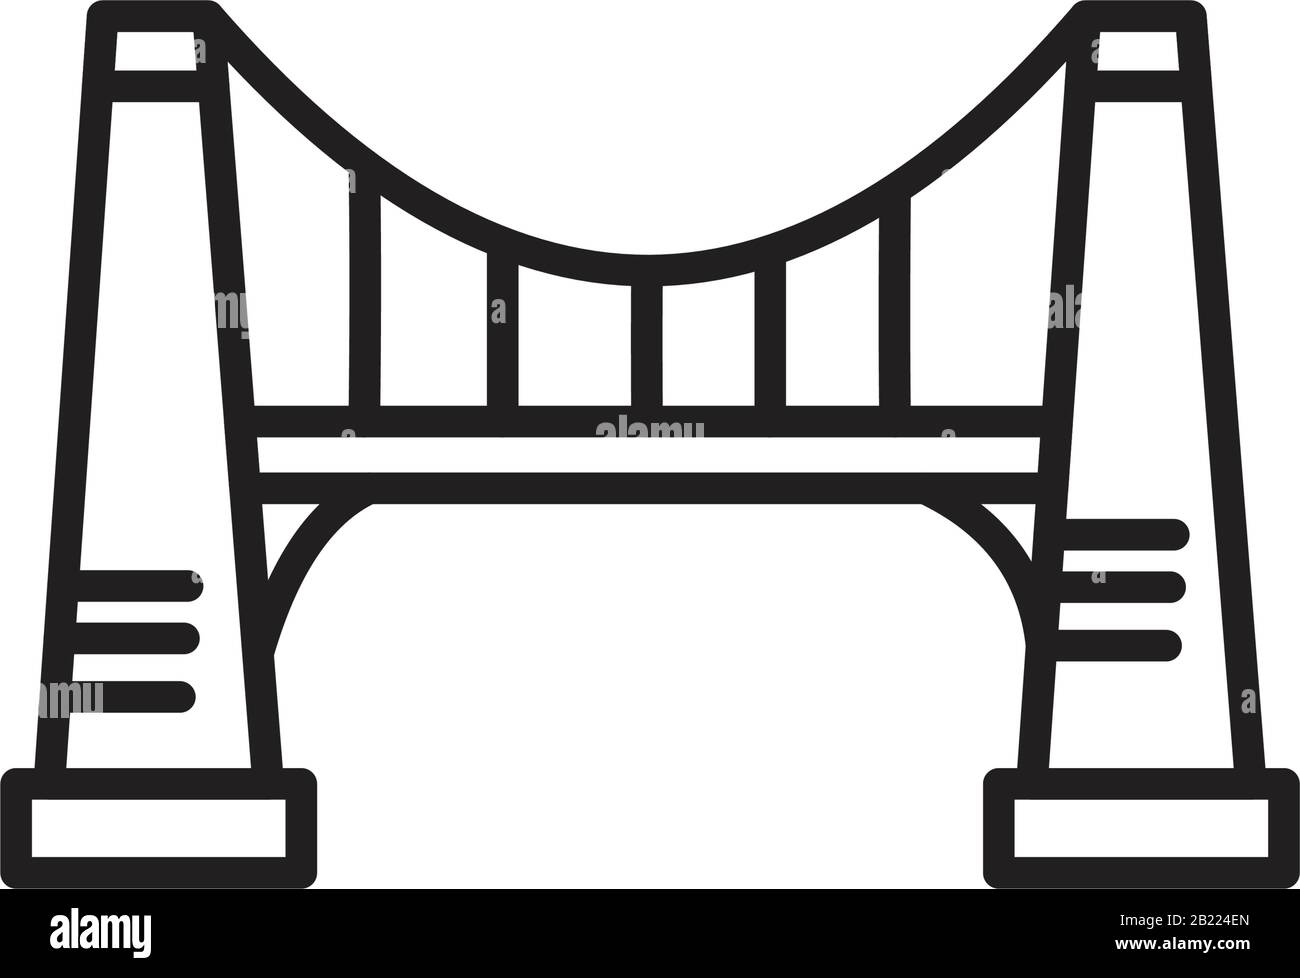 Modèle D'Icône de ligne de ponts couleur noire modifiable. Icône de ligne de ponts illustration vectorielle plate pour la conception graphique et Web. Illustration de Vecteur